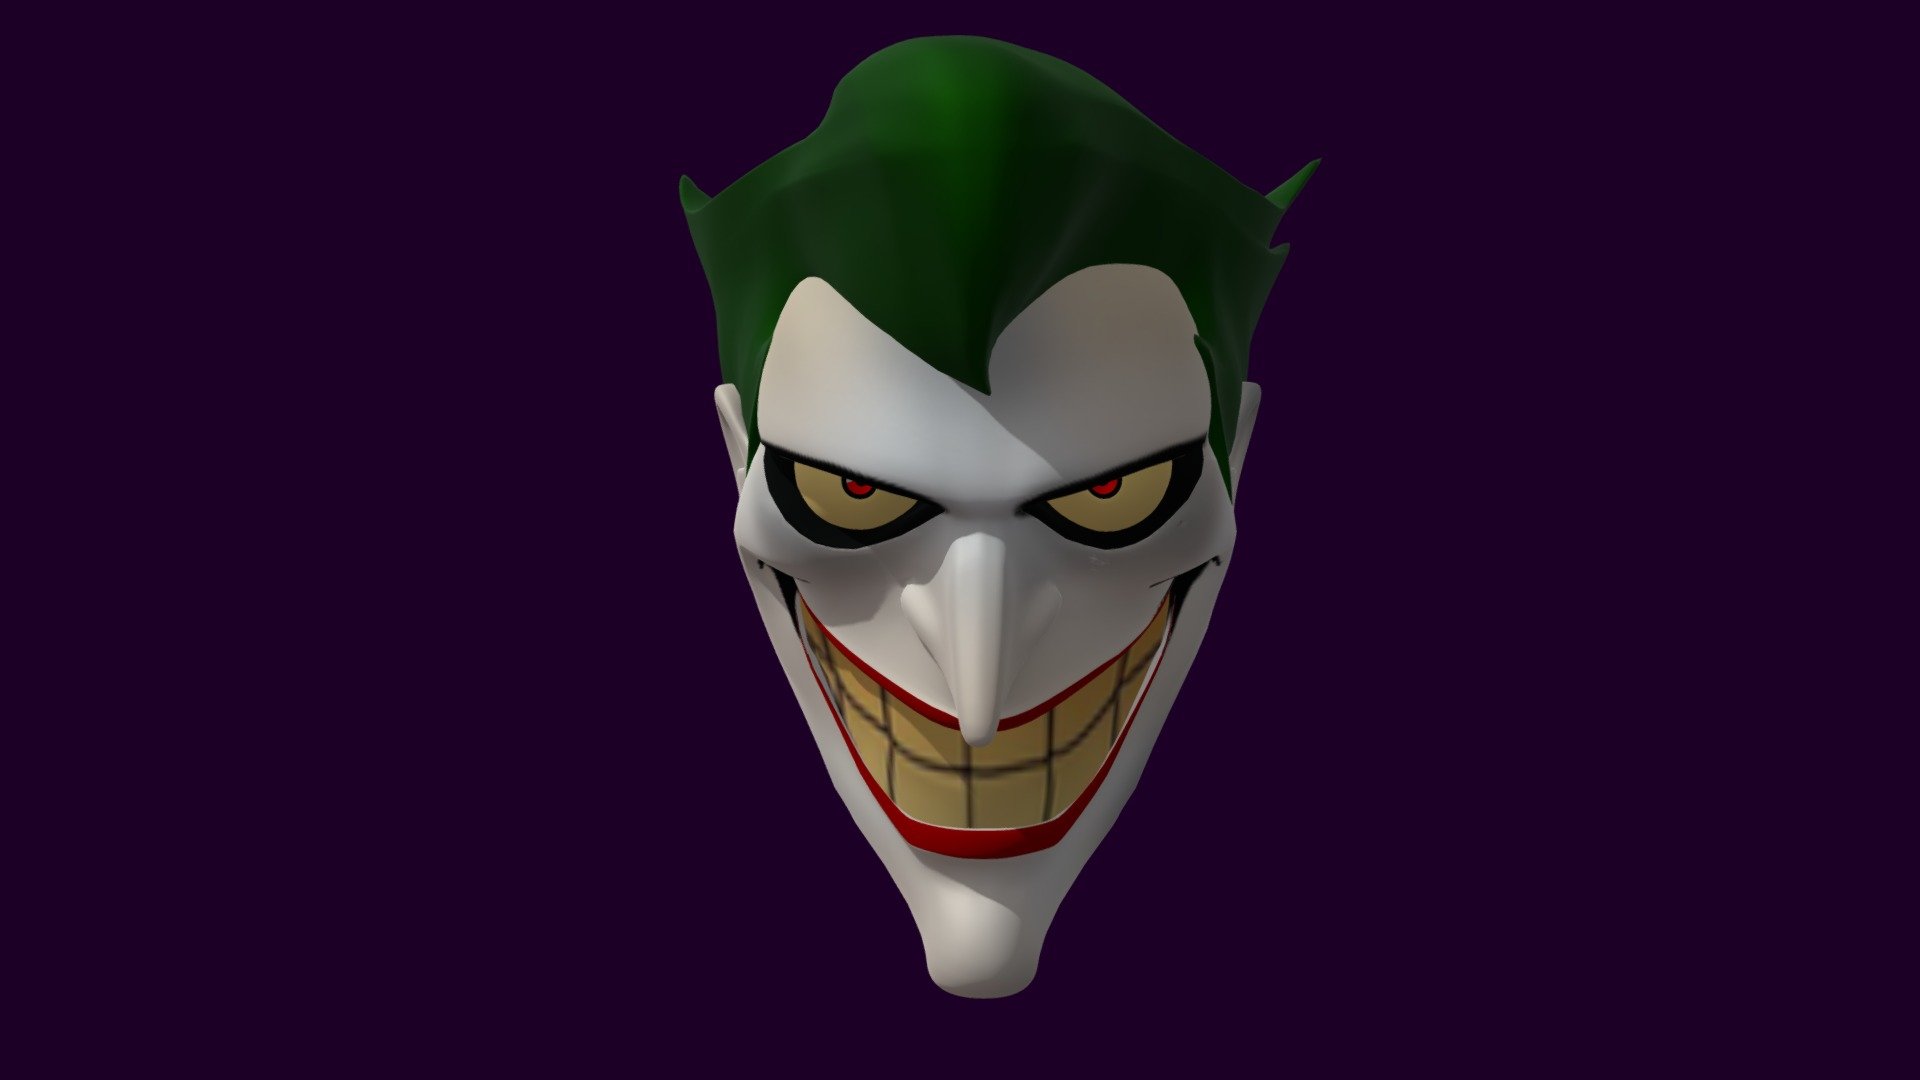 Joker face - Joker - 3D model by Eltoro (@crowncity105) 3d model